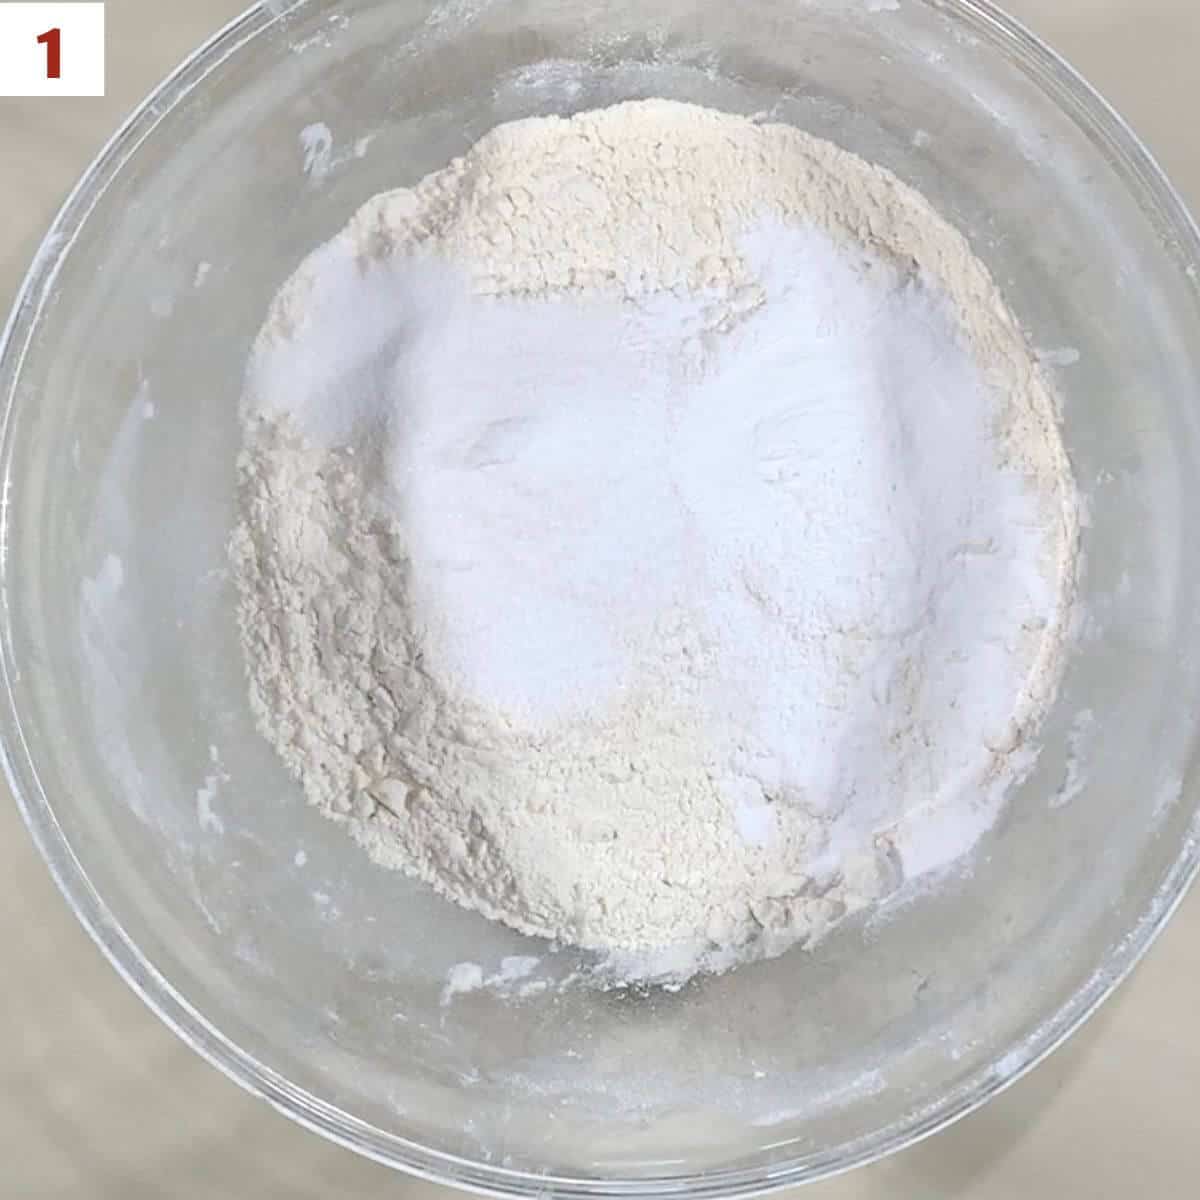 Flour, sugar, baking power, & salt in a glass bowl.